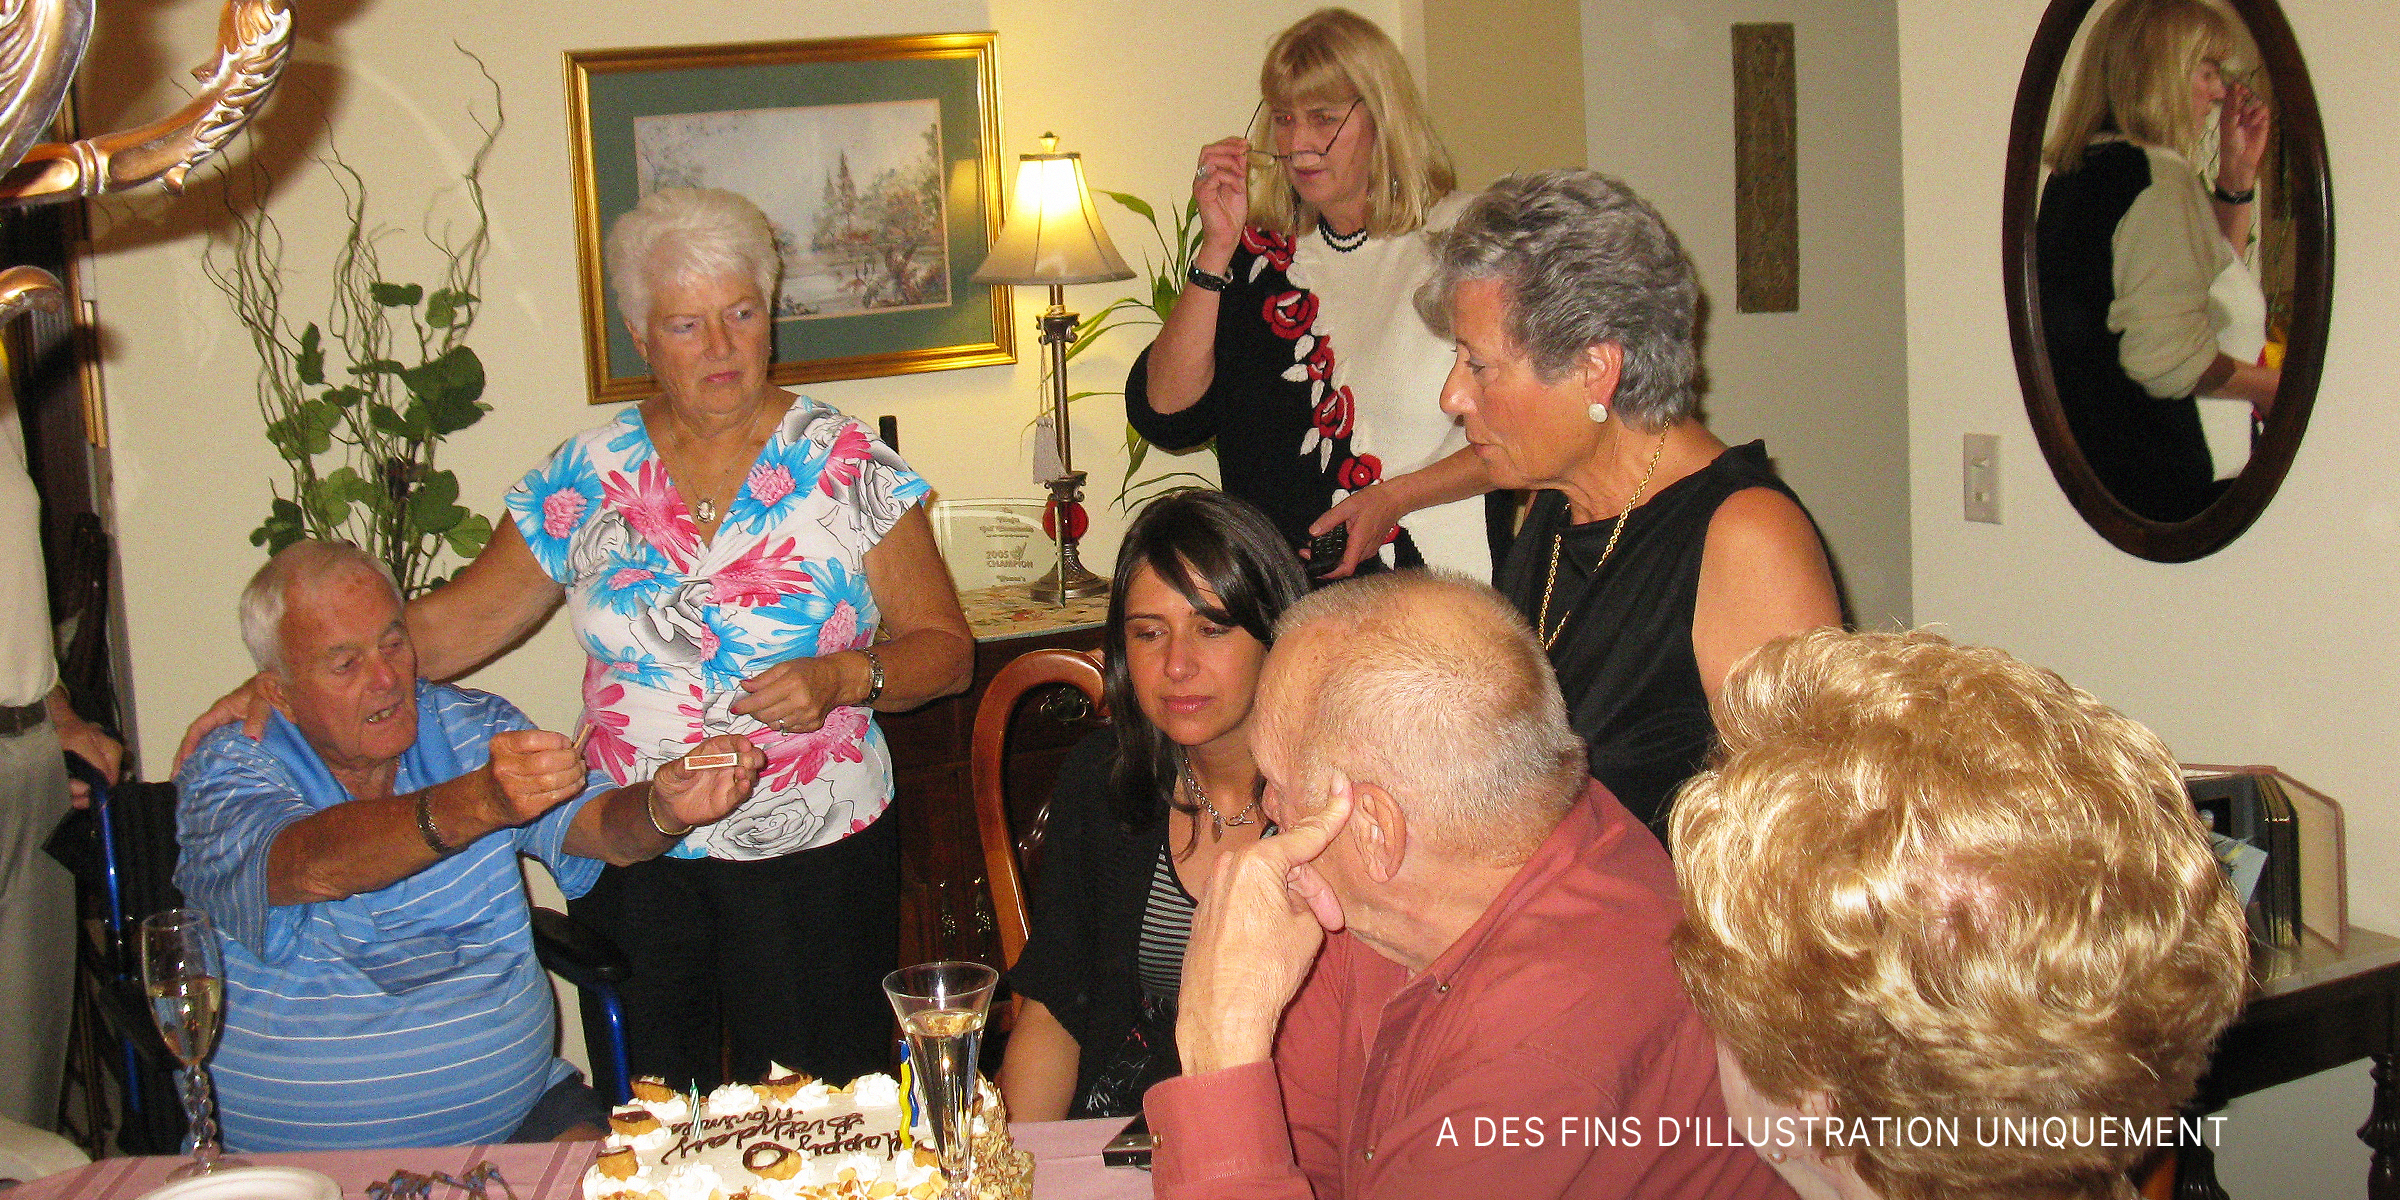 Famille et amis à une fête d'anniversaire | Source : Flickr.com/(CC BY 2.0) par Stevie Rocco